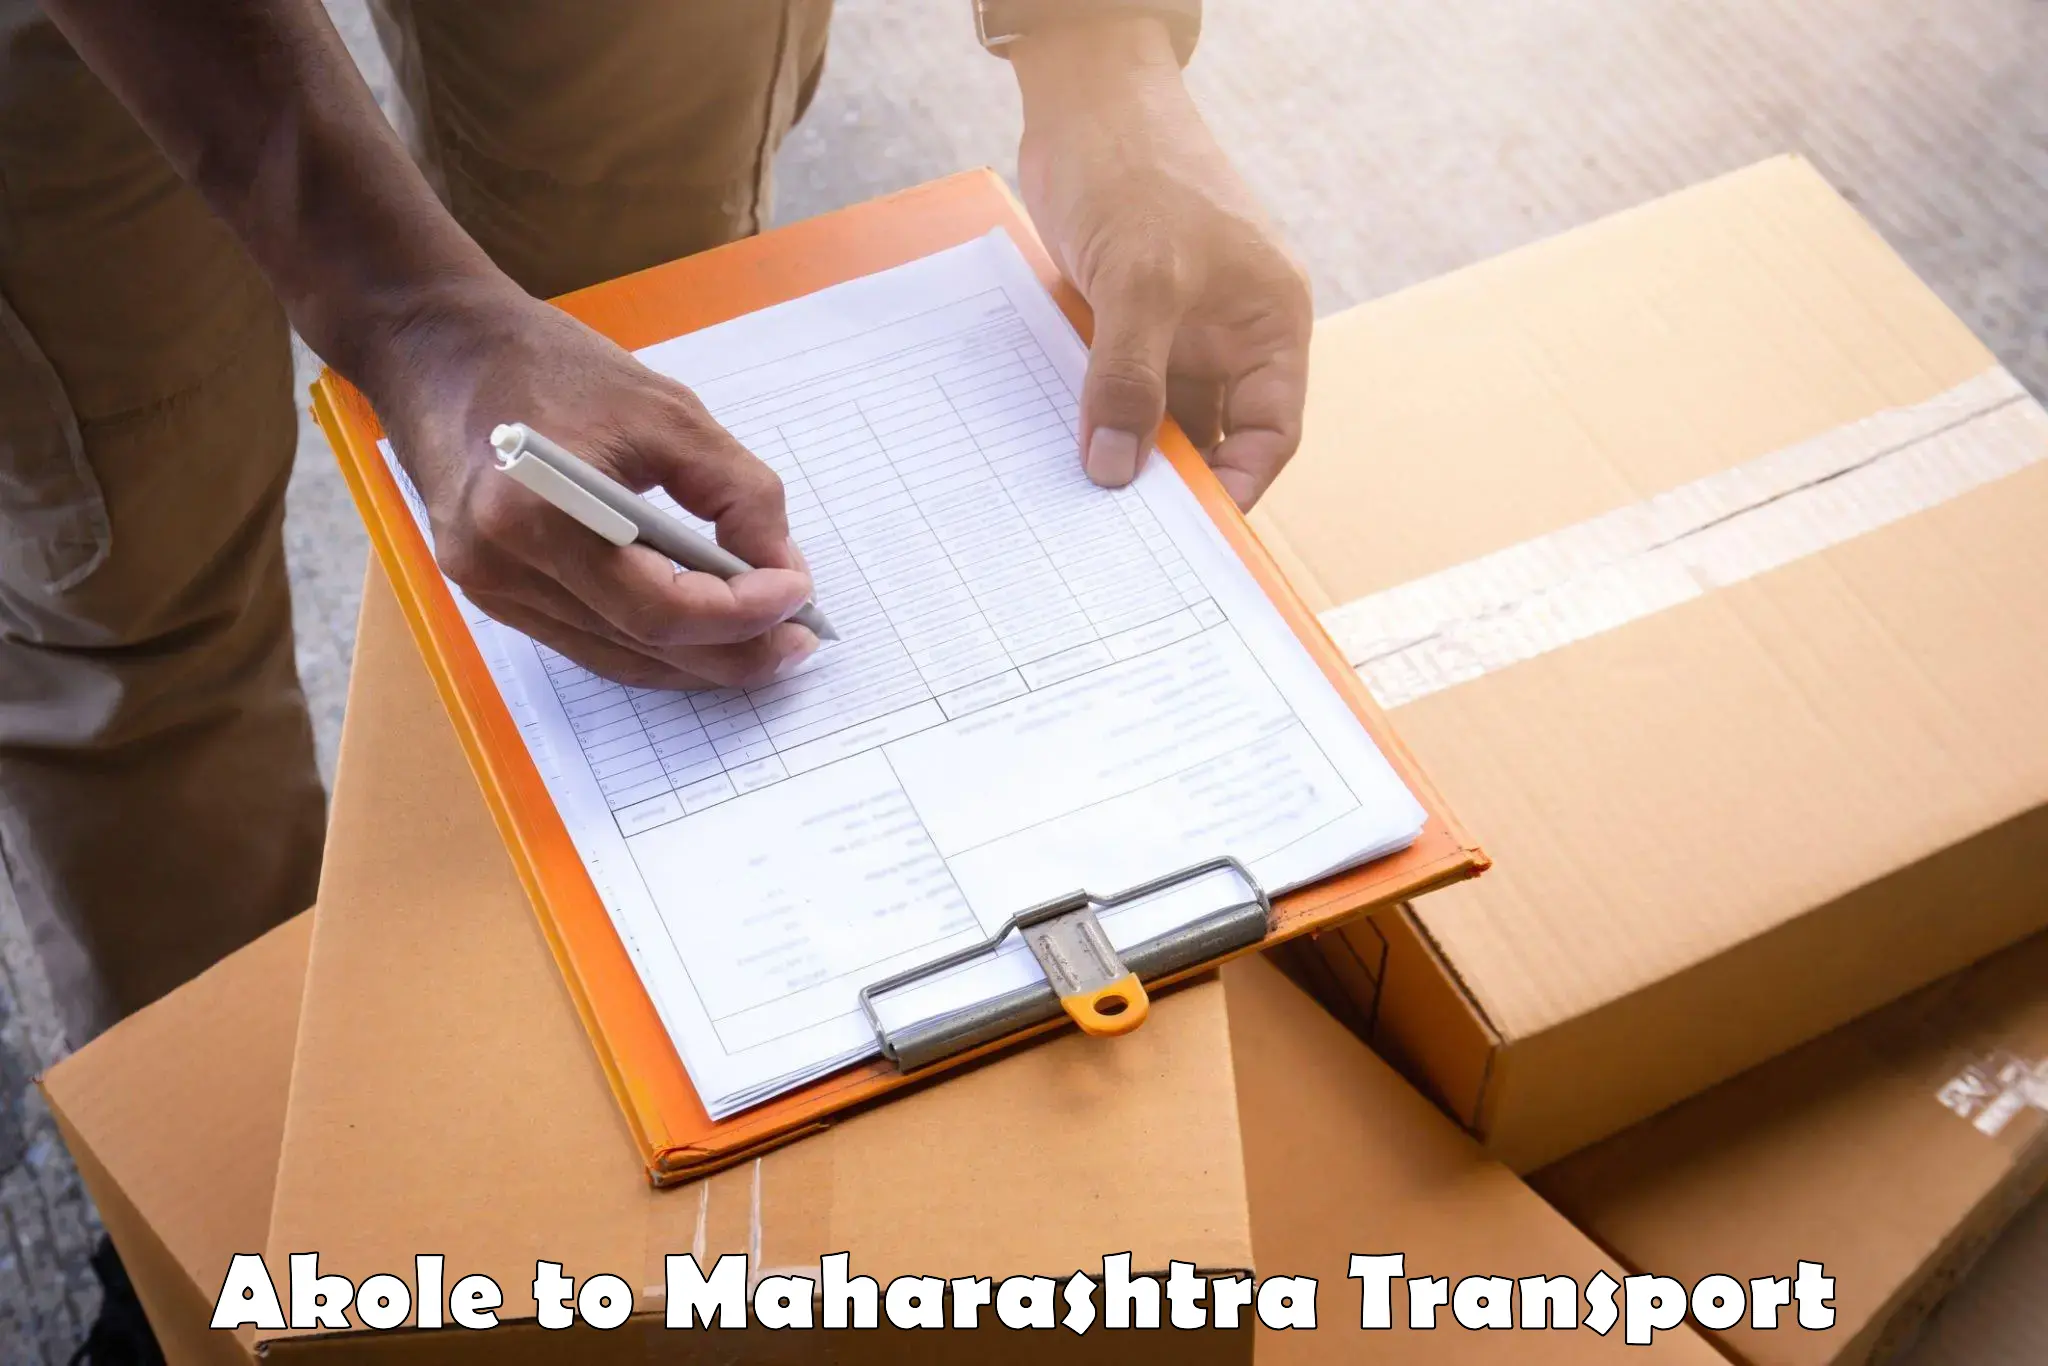 Shipping partner Akole to Maharashtra